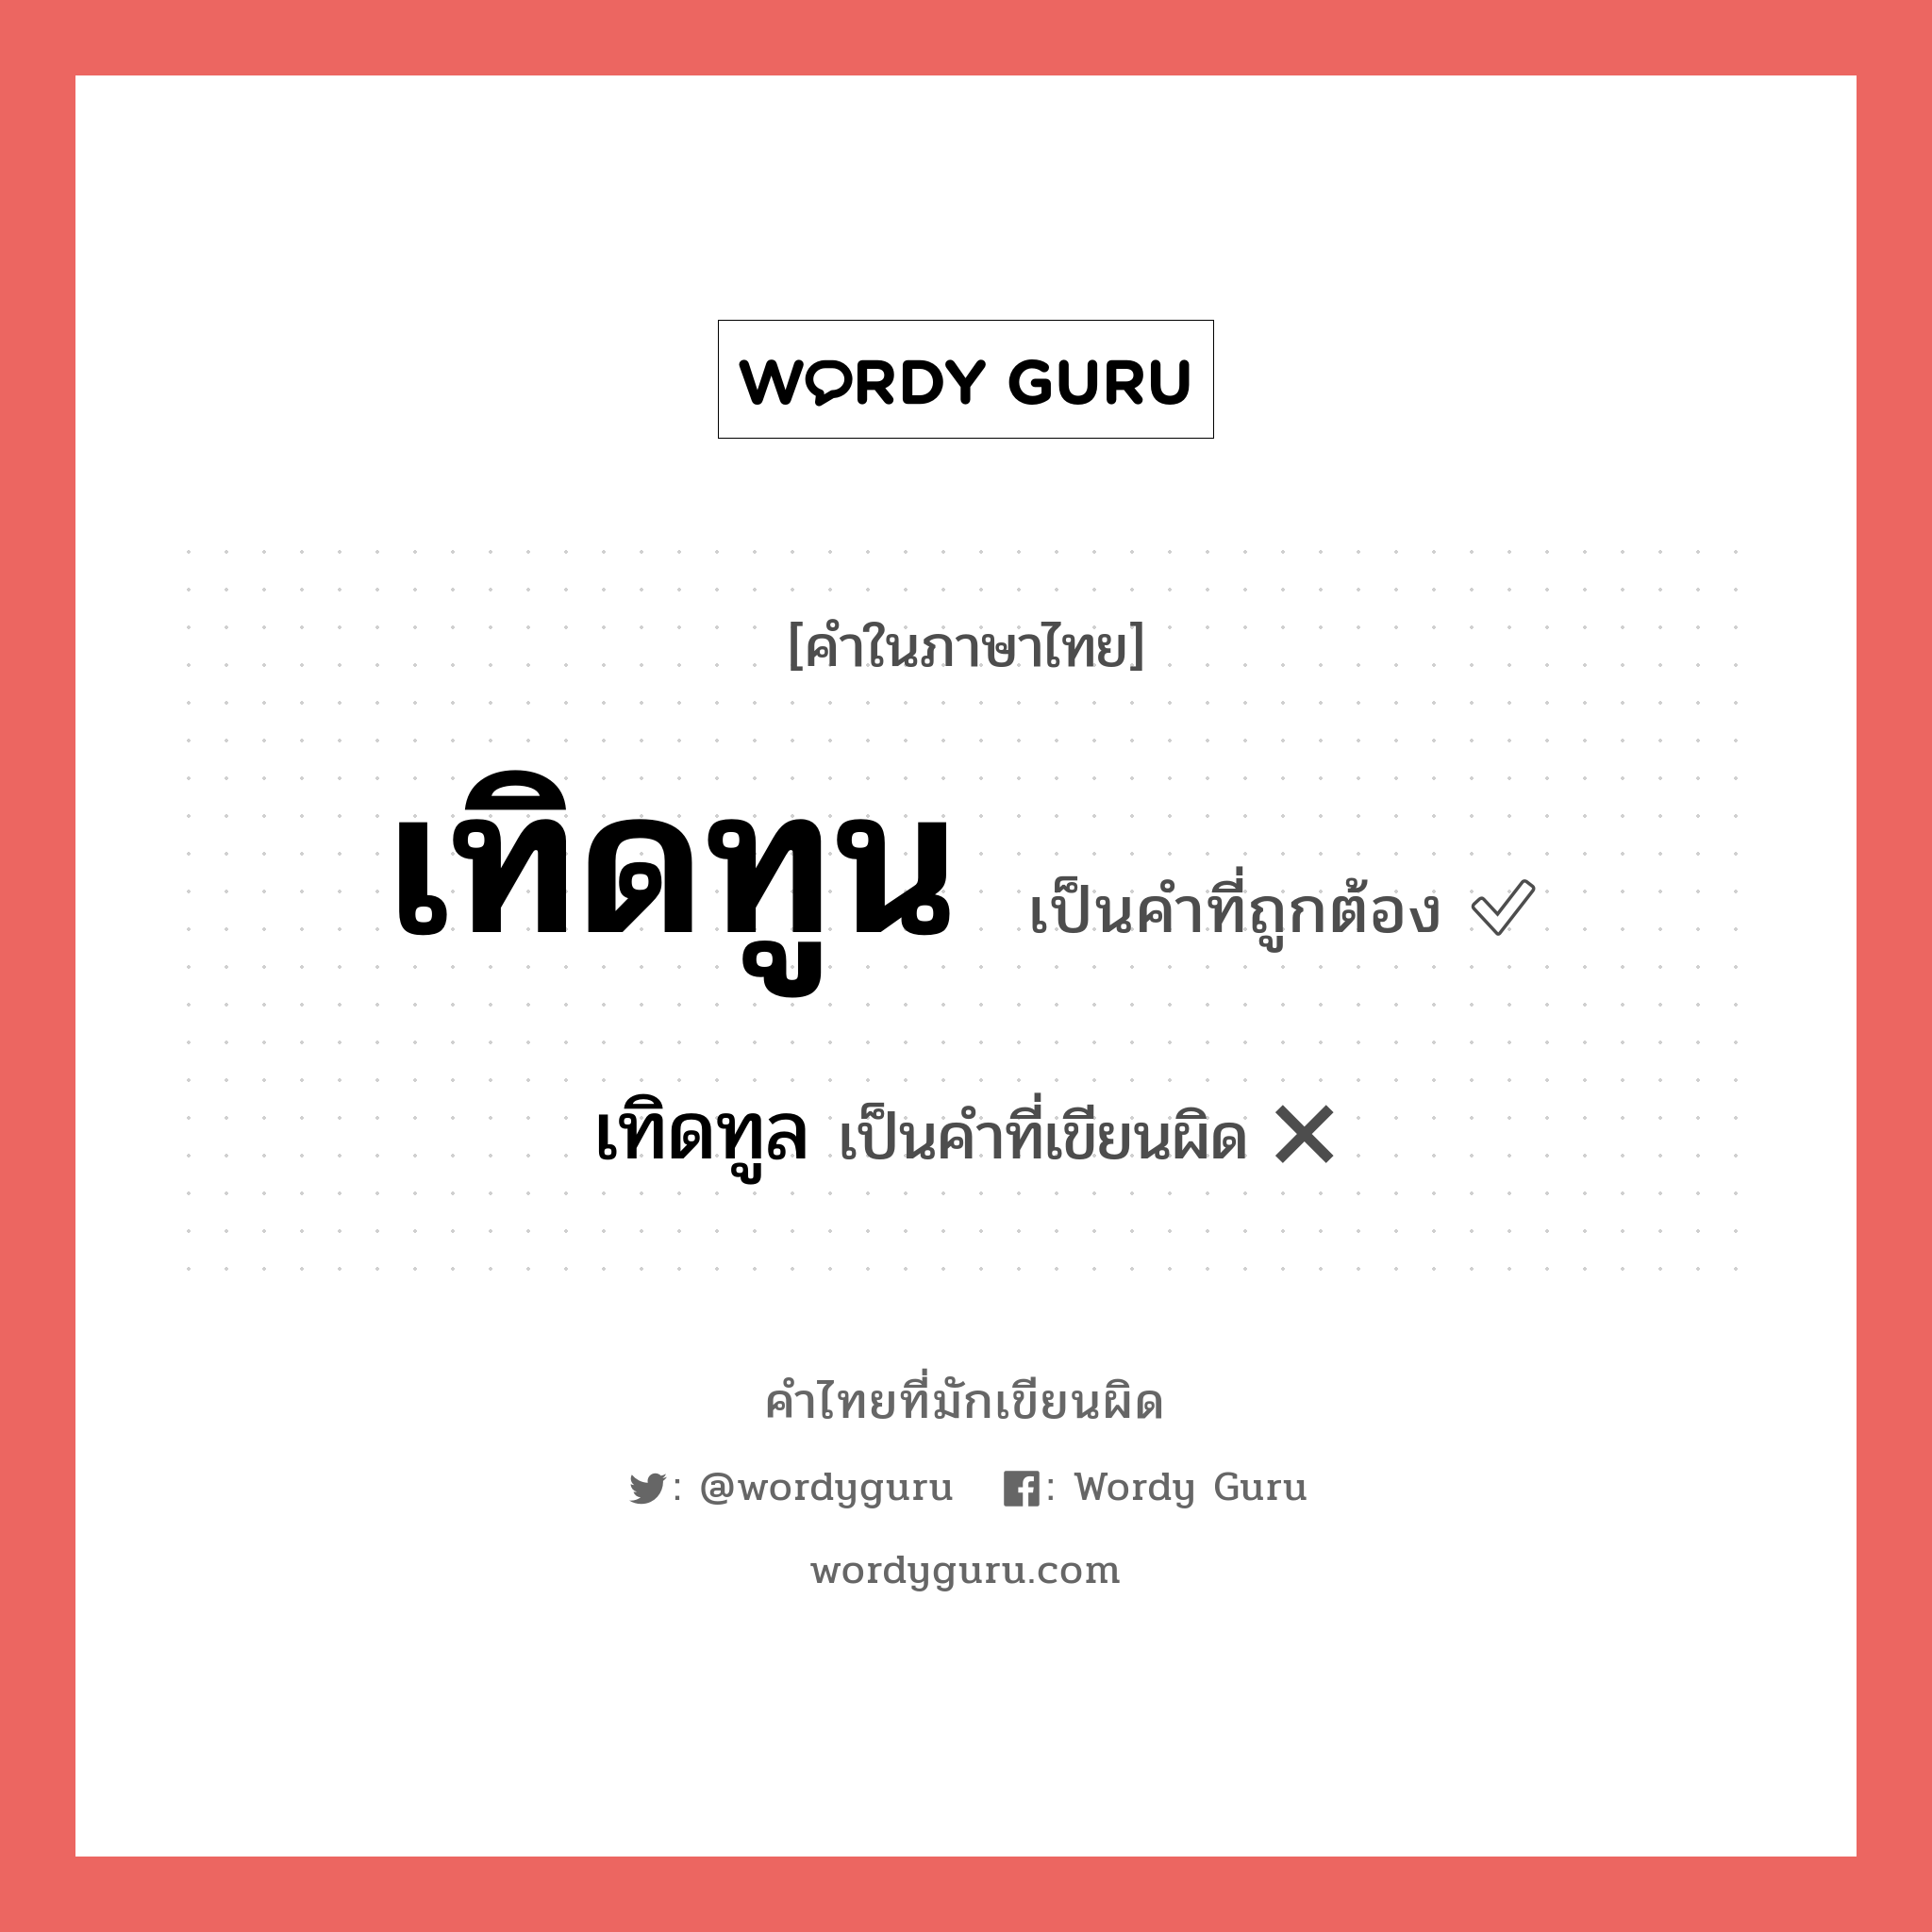 เทิดทูน หรือ เทิดทูล เขียนยังไง? คำไหนเขียนถูก?, คำในภาษาไทยที่มักเขียนผิด เทิดทูน คำที่ผิด ❌ เทิดทูล